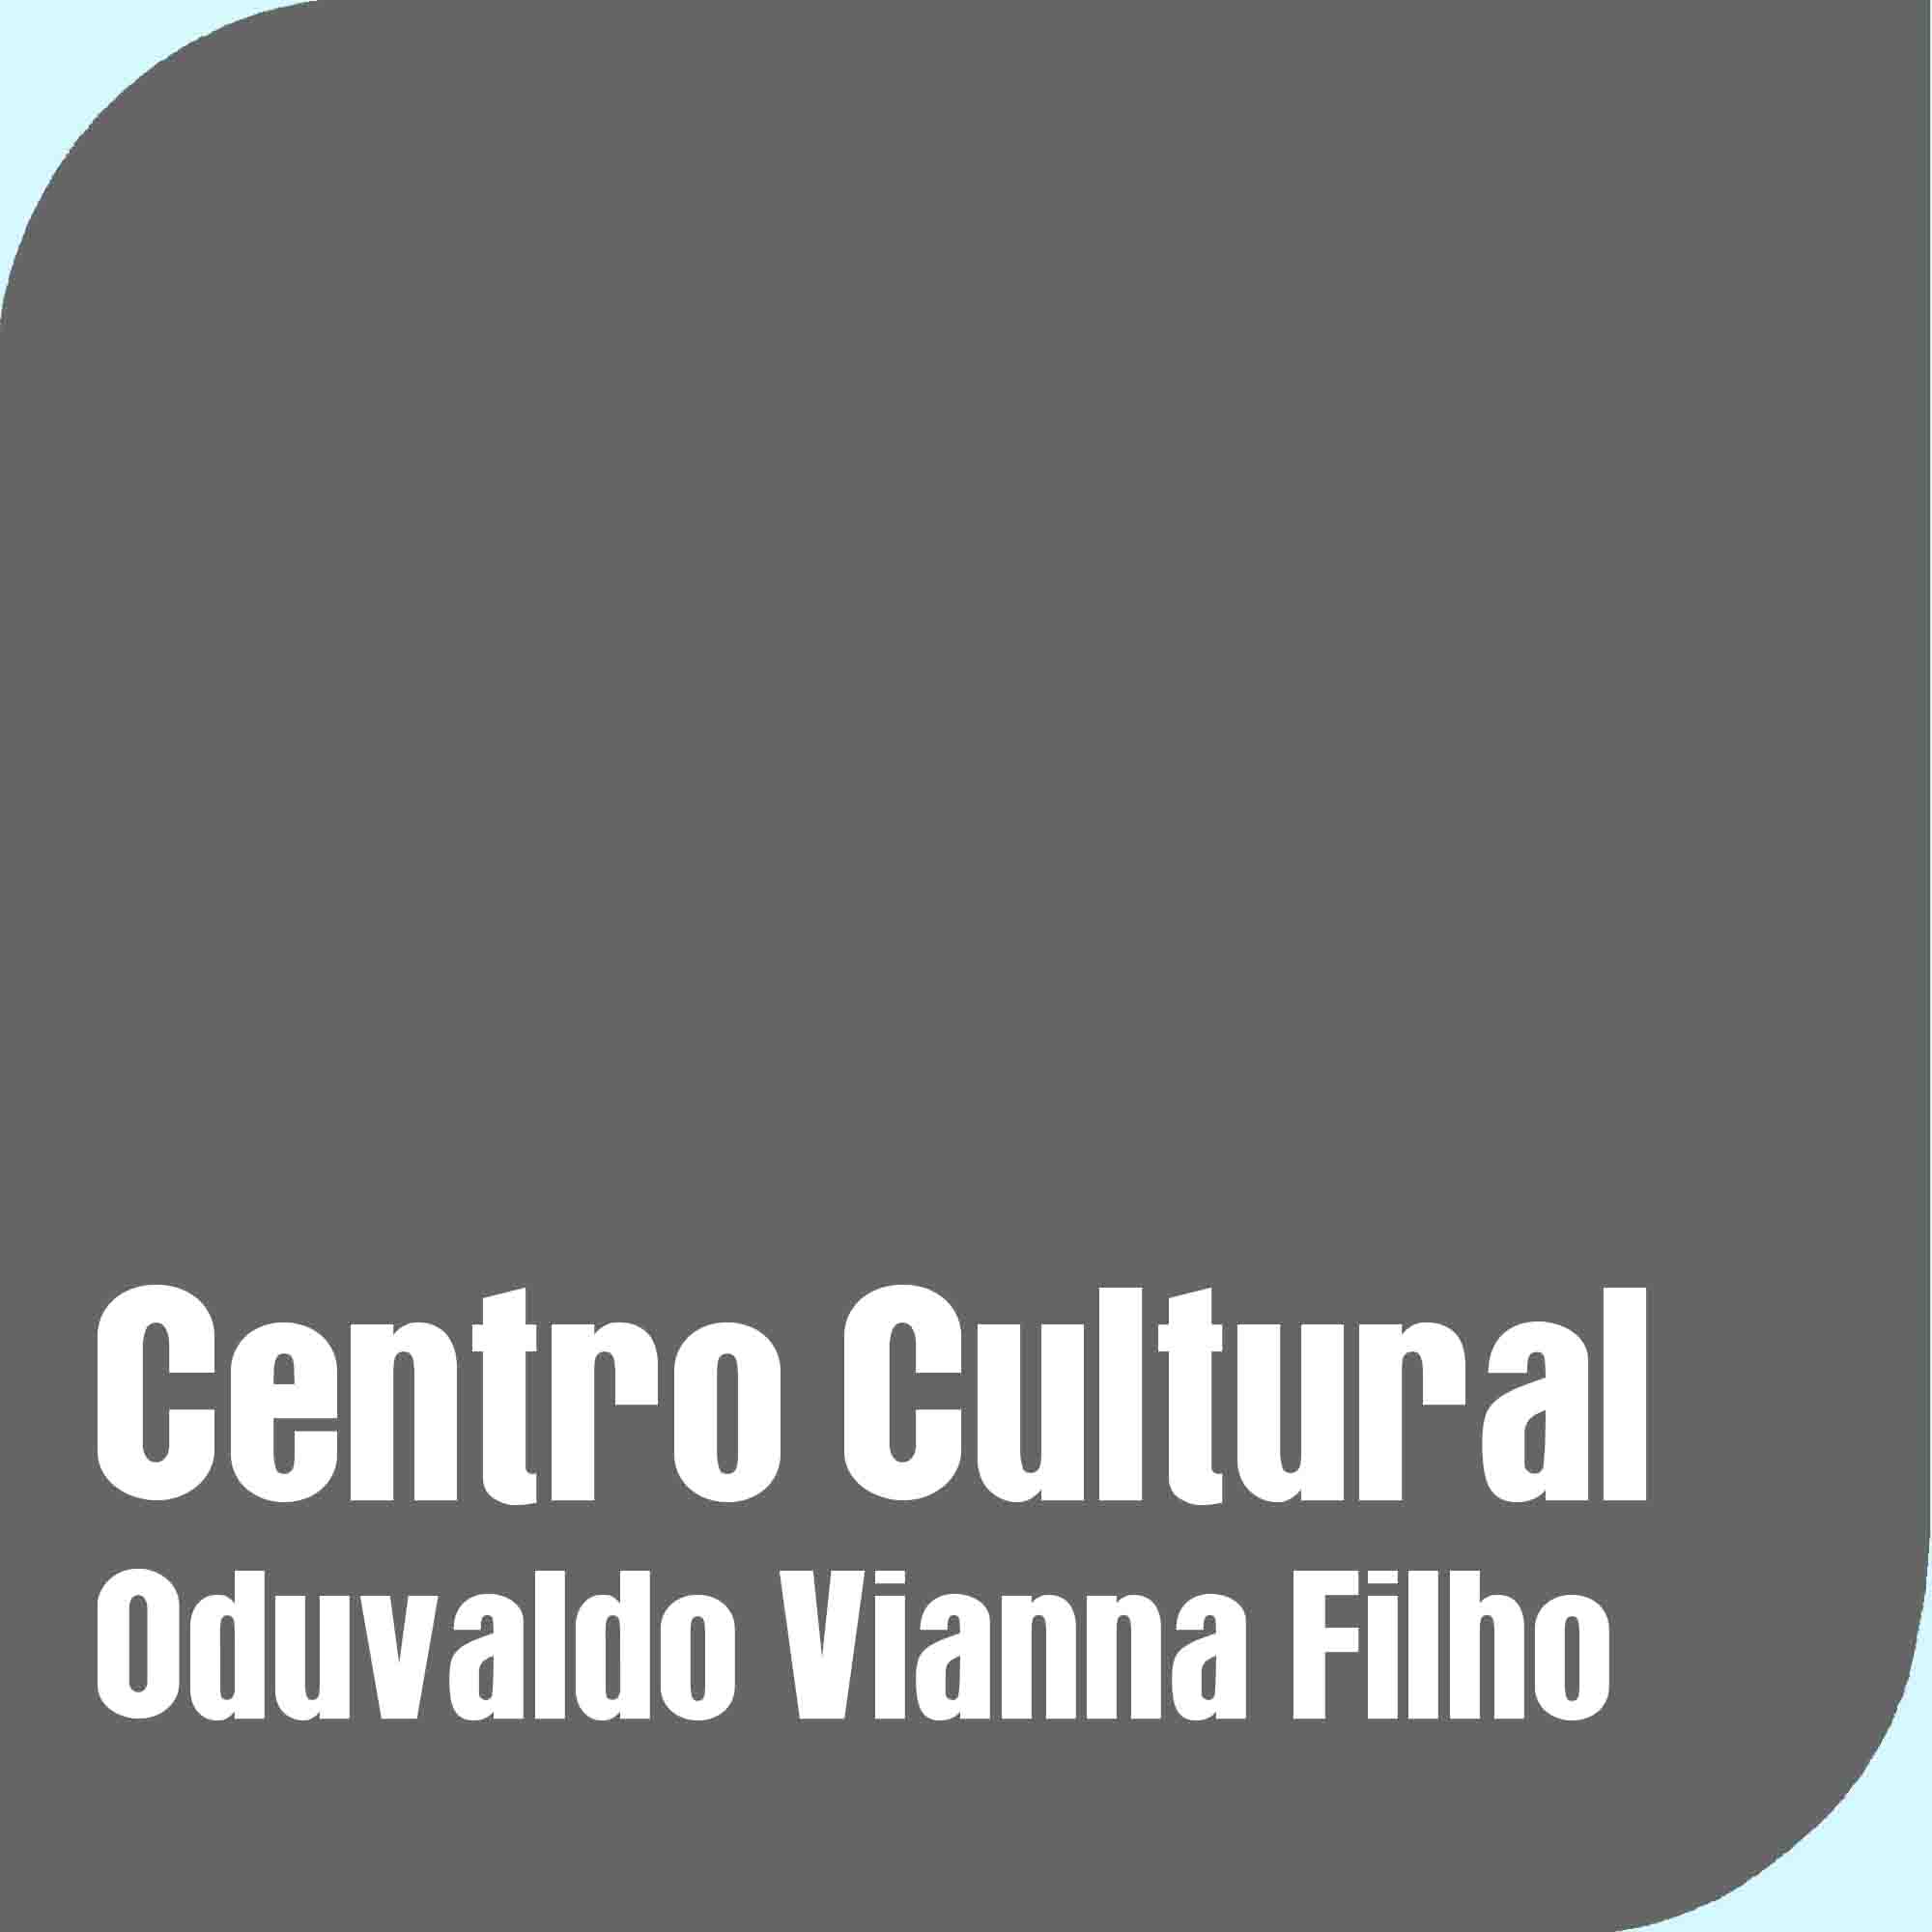 Centro Cultural Municipal Oduvaldo Vianna Filho <br>[Castelinho do Flamengo]